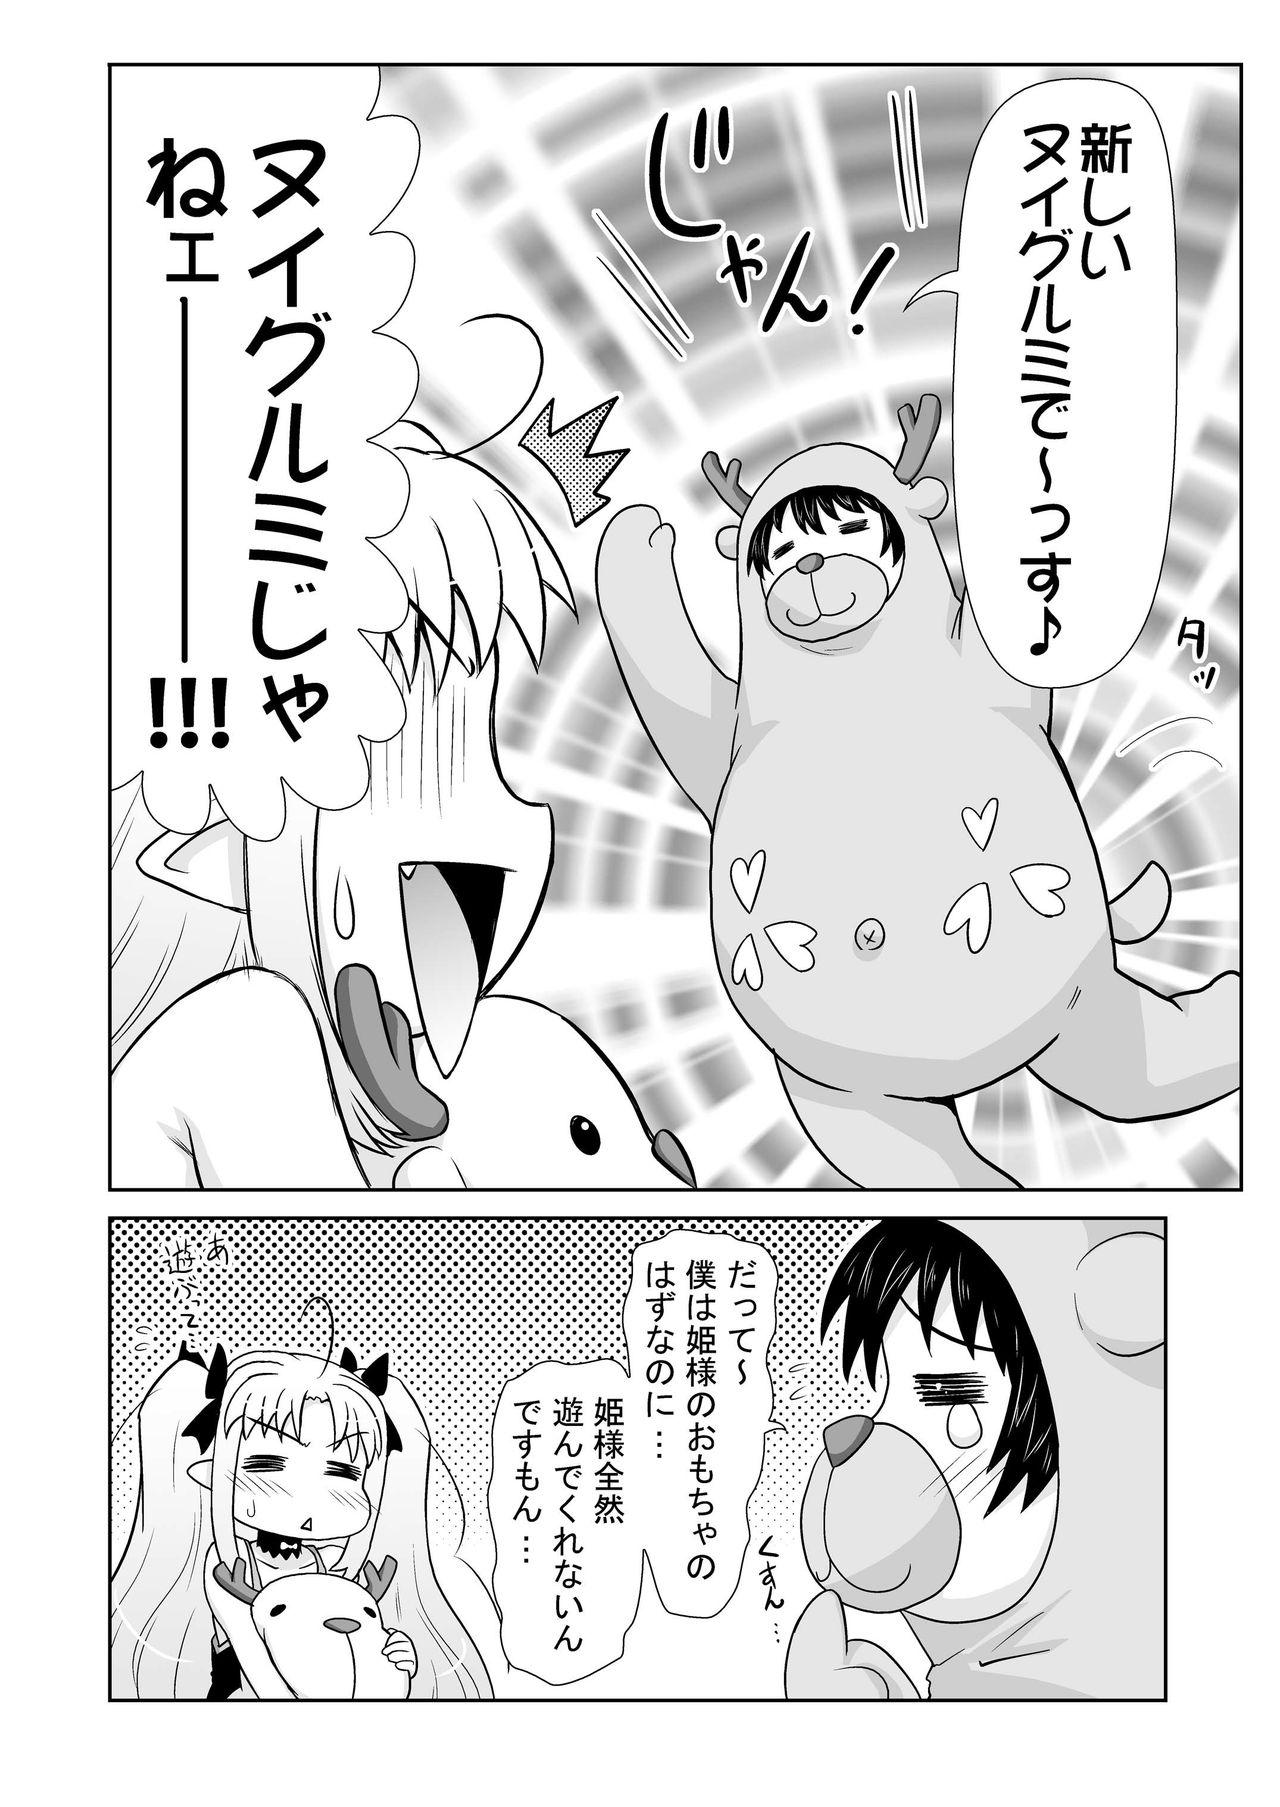 Smooth Boku wa Lotte-sama no Omocha desu ga, Nani ka? - Lotte no omocha Granny - Page 6